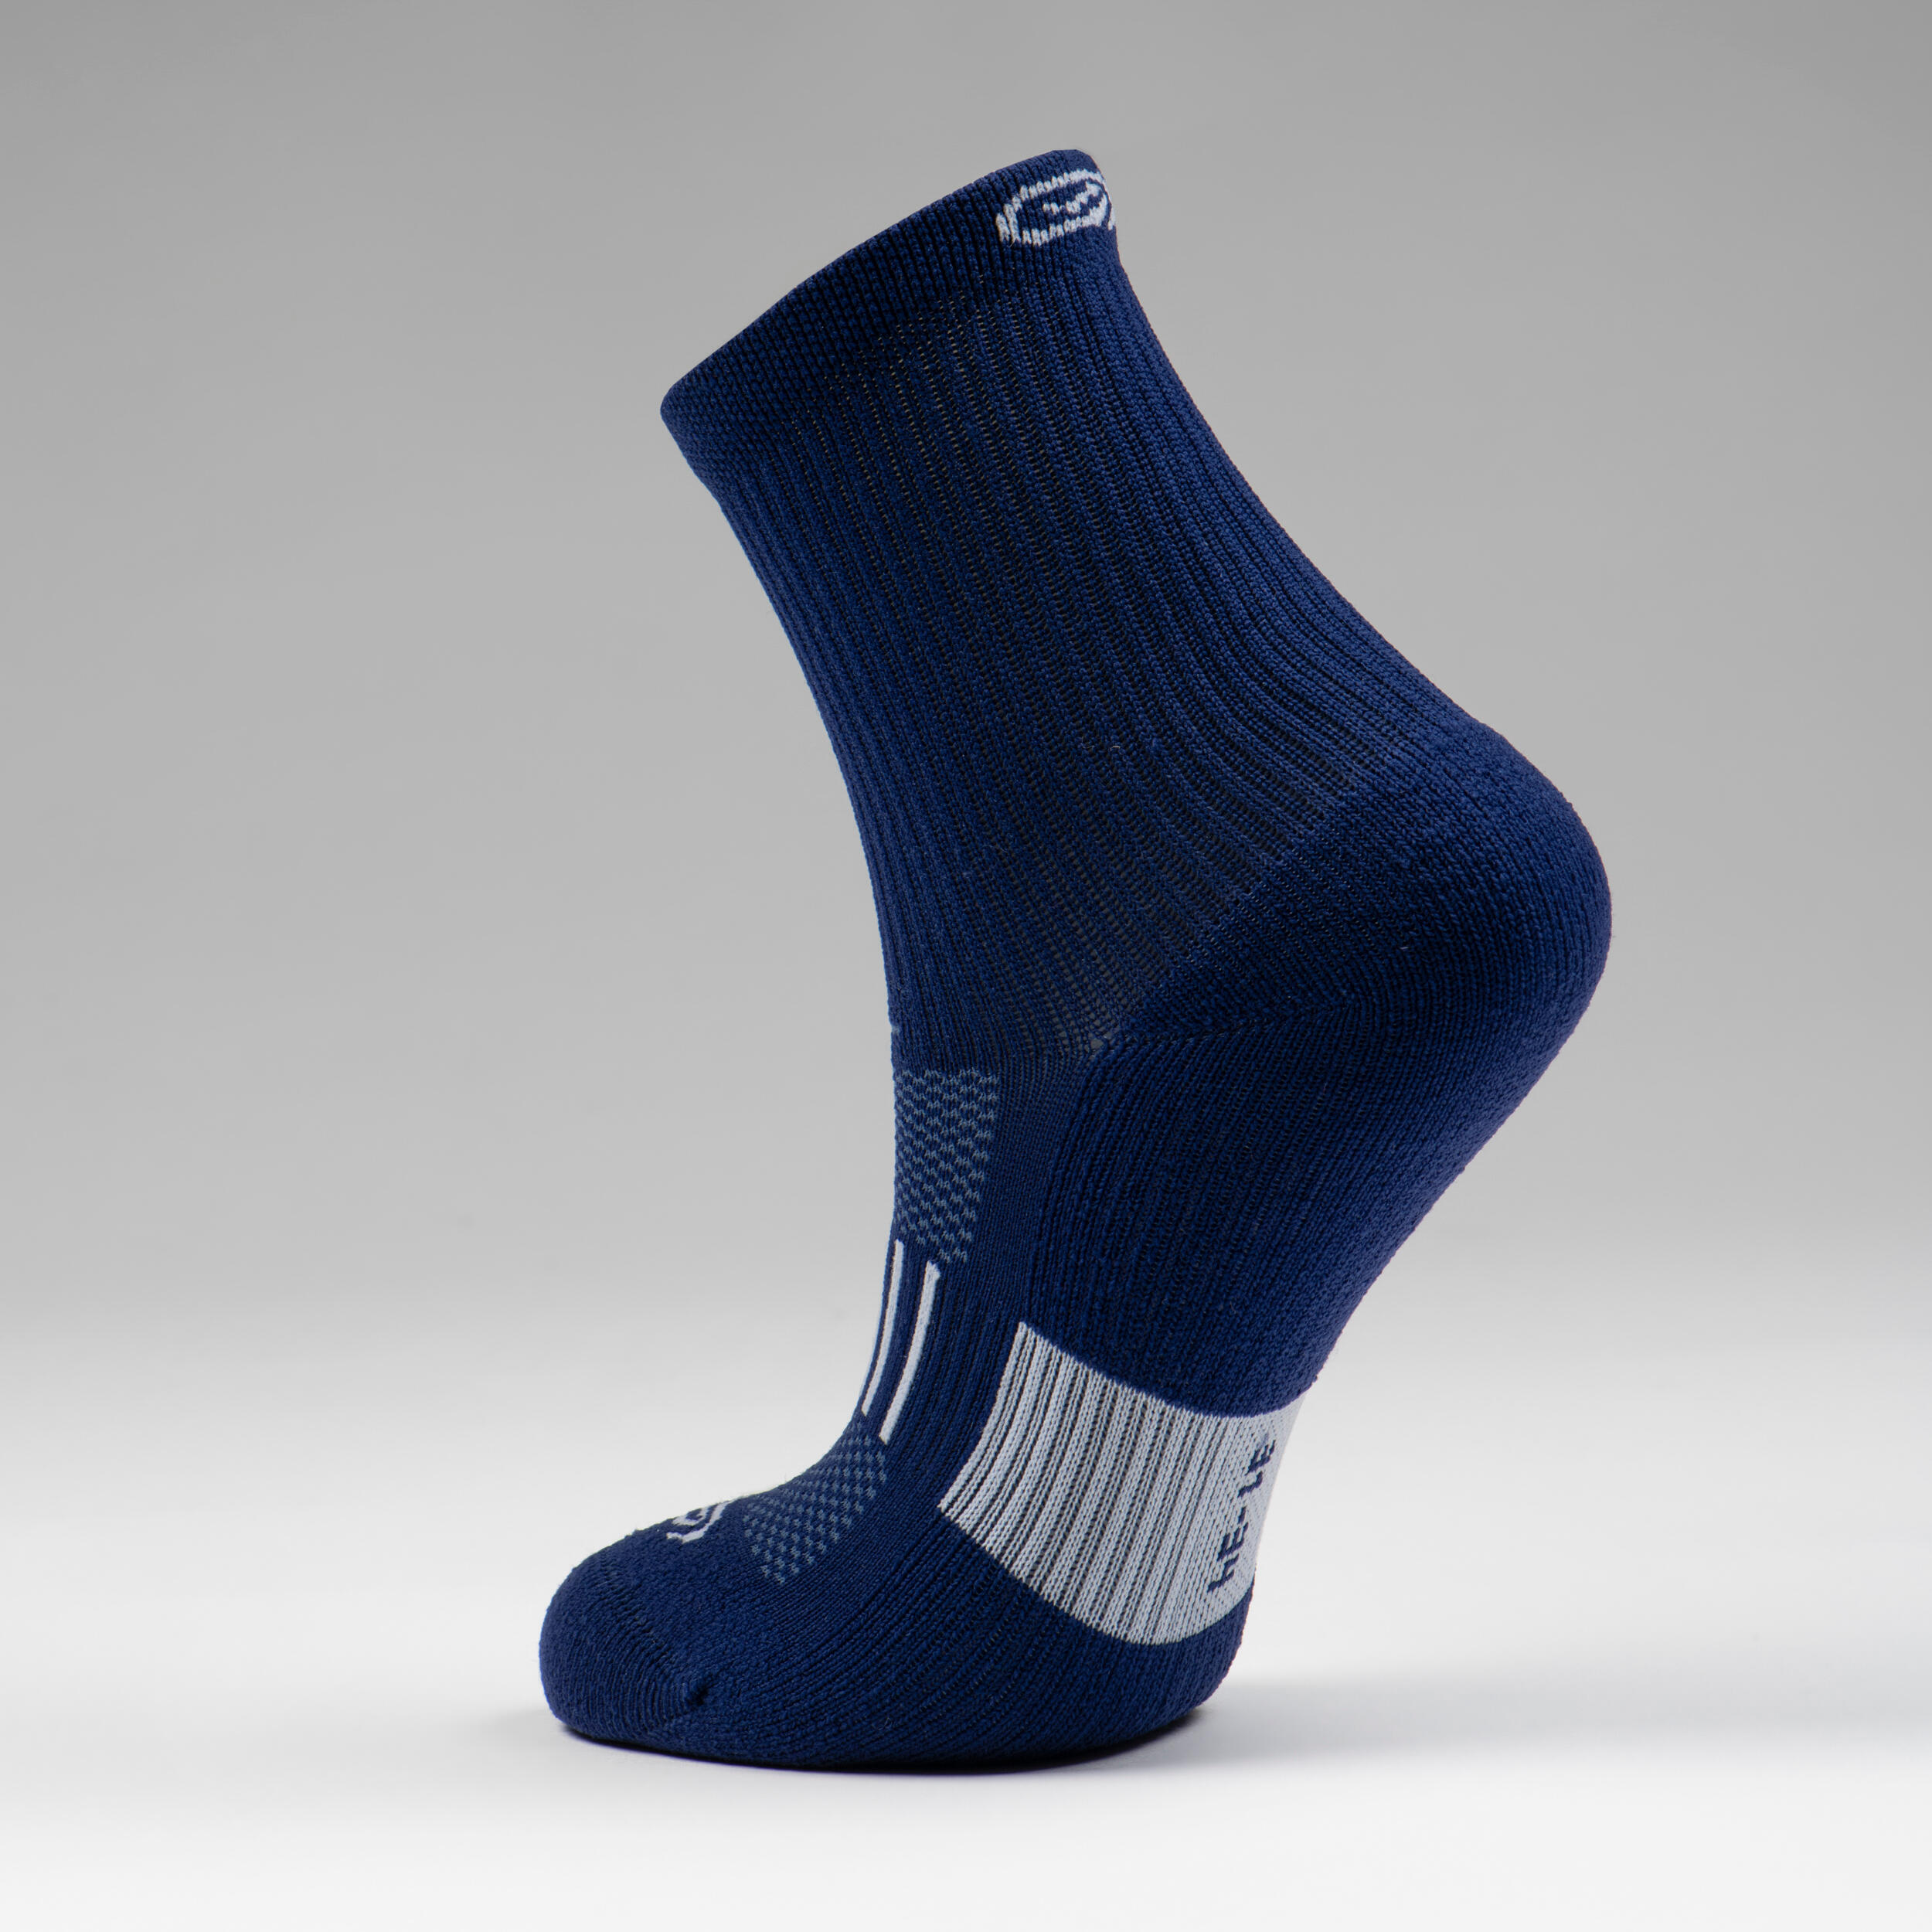 KIPRUN 500 MID kids' running socks 2-pack - navy blue 3/5